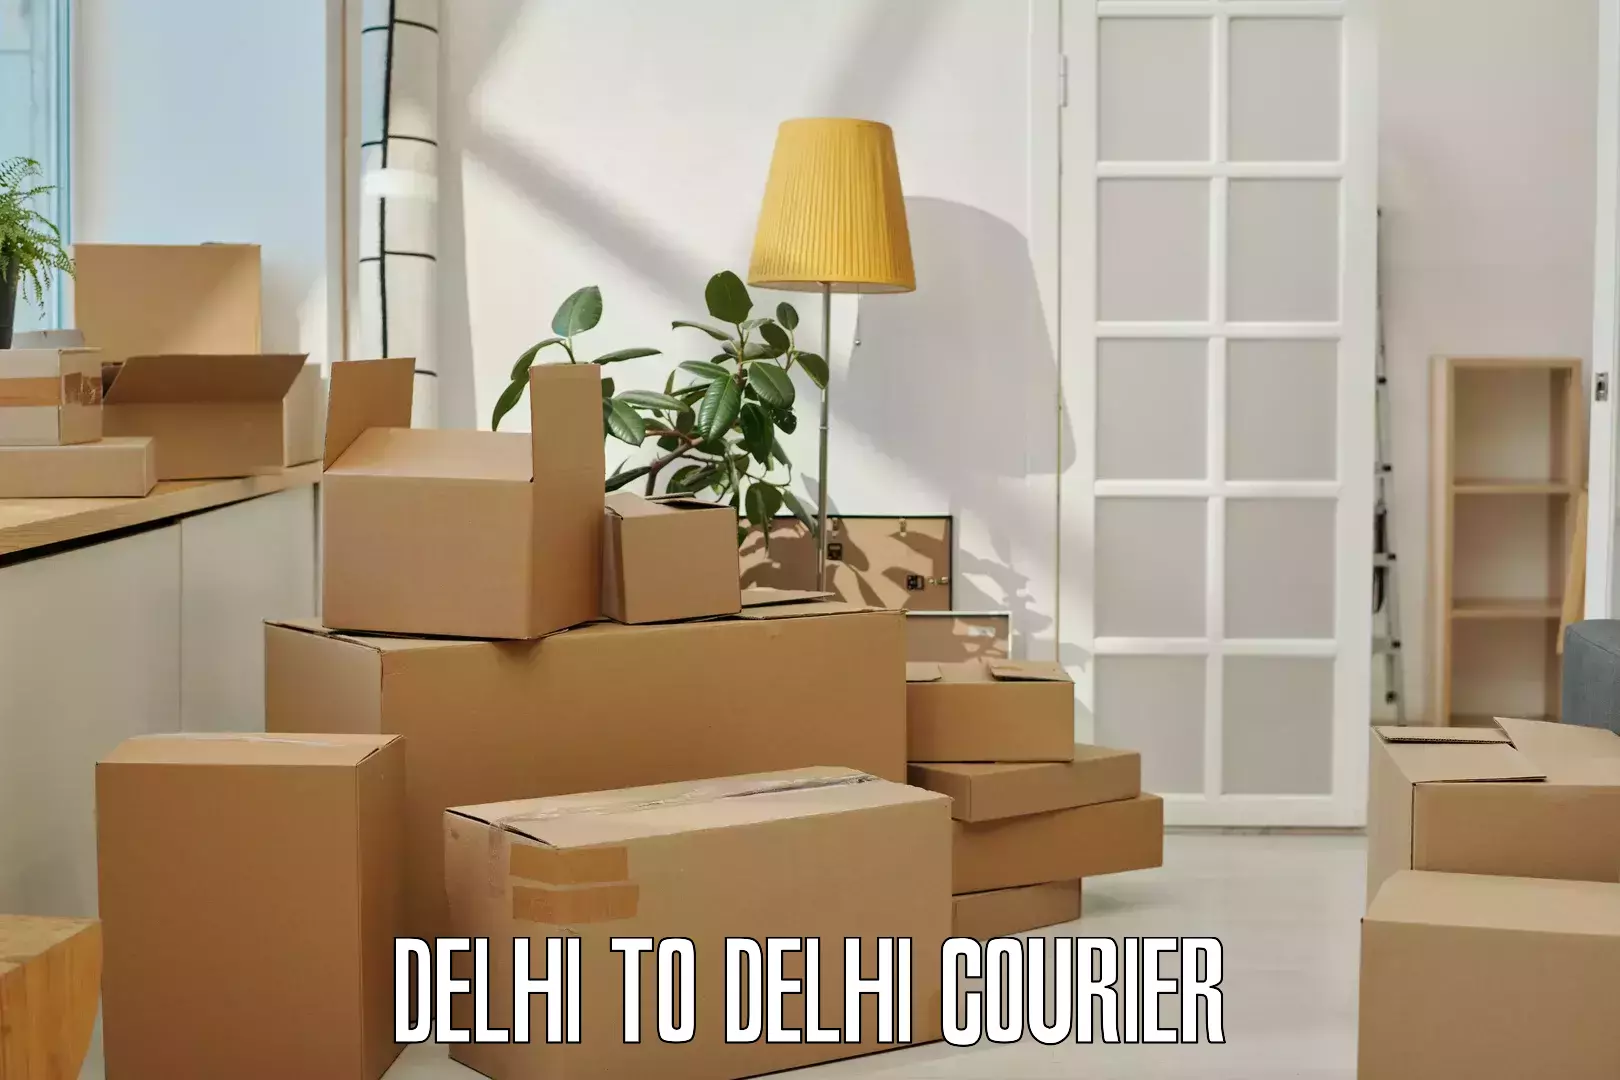 Fast delivery service Delhi to Delhi